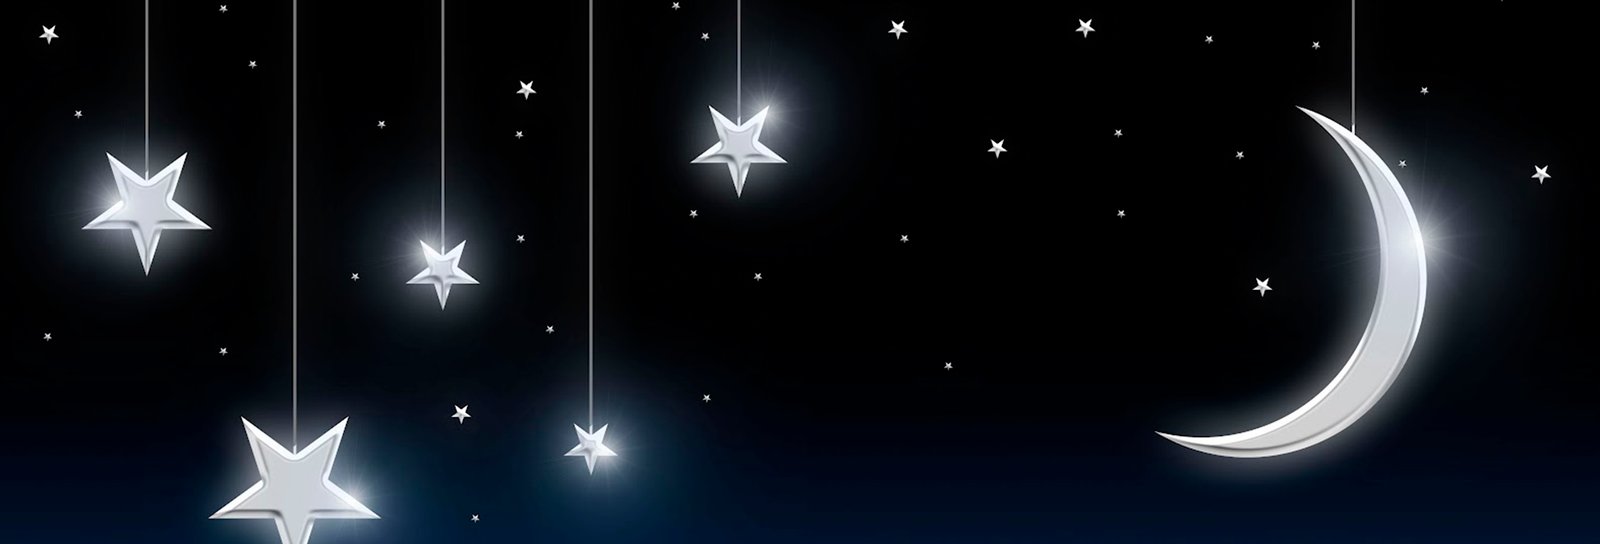 Lição 7 - Conhecer+ - Betel - Lua e estrelas para uma bela noite